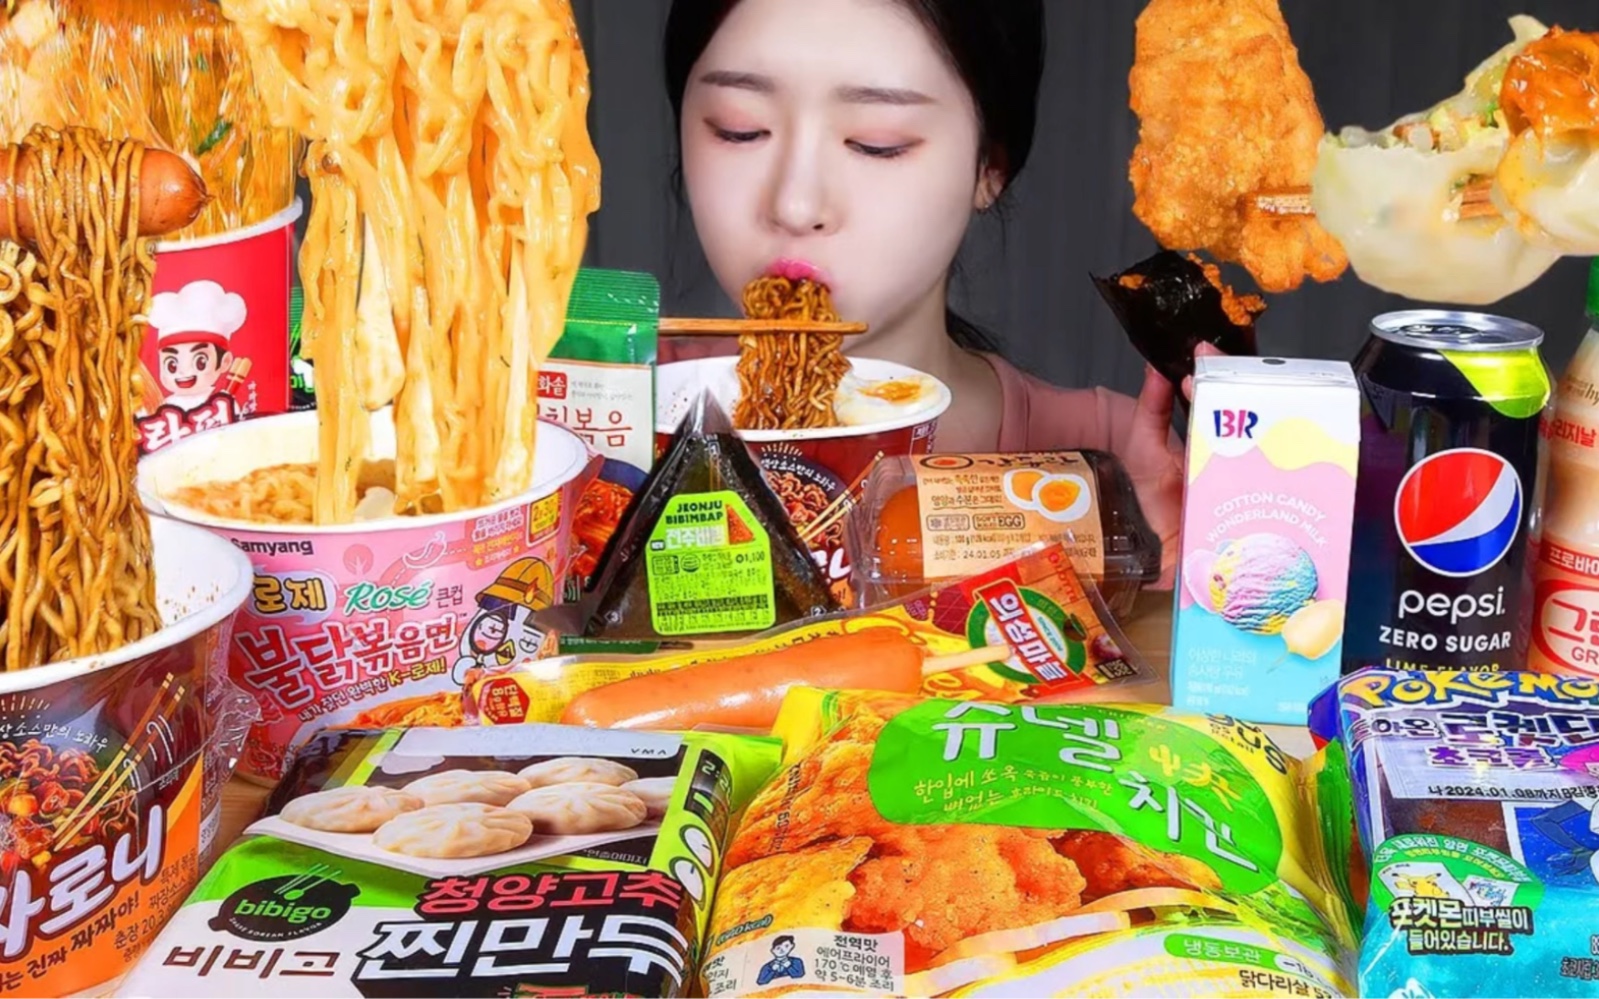 便利店的速食品组合 韩国吃播